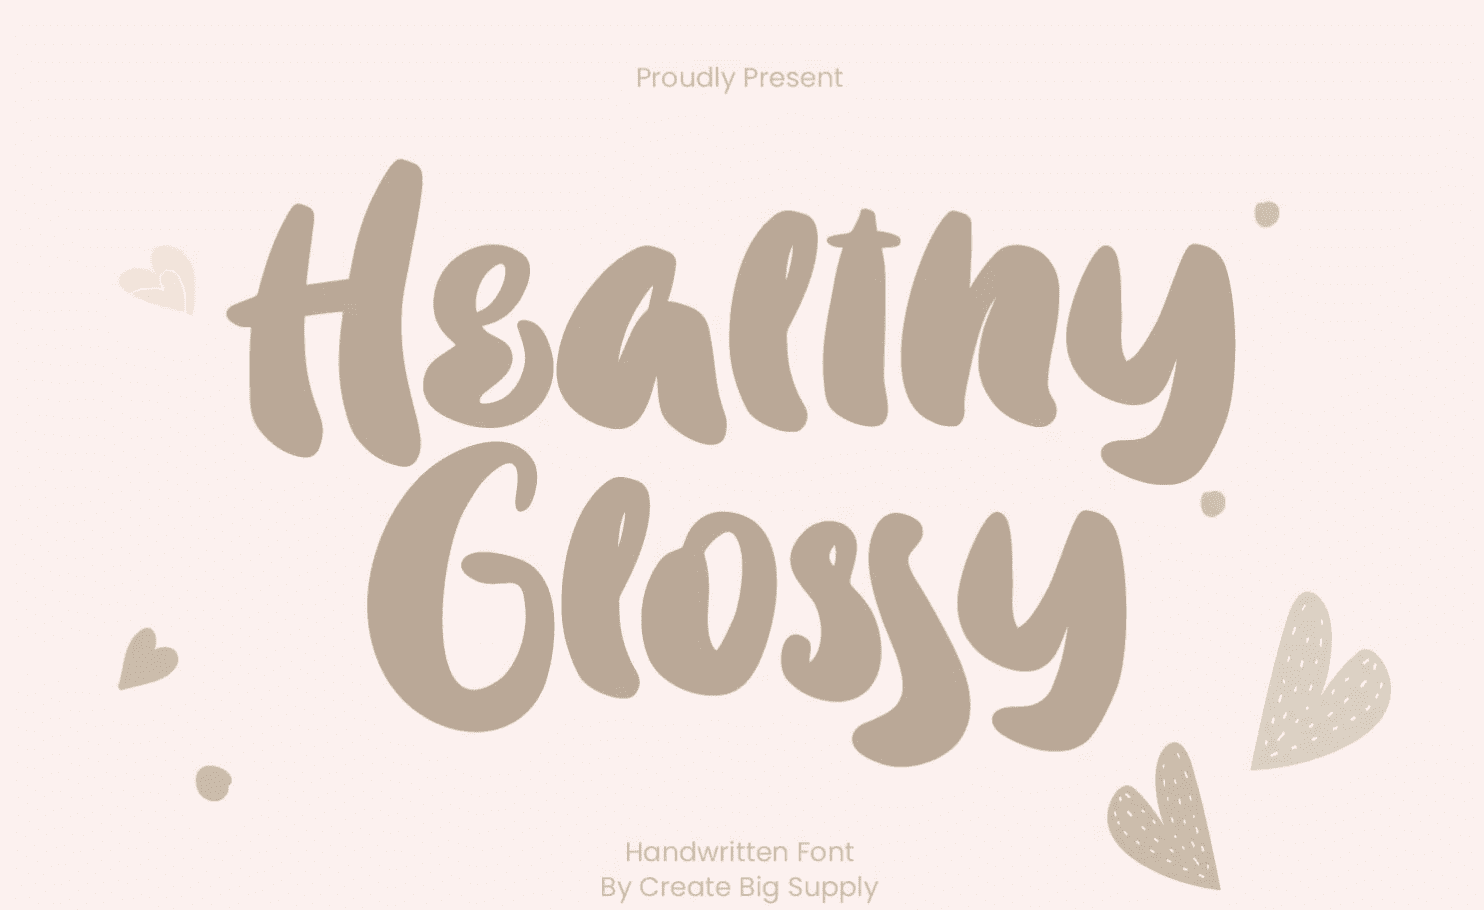 Изображение [Fontbundles] Healthy Glossy Font (2021) в посте 245890